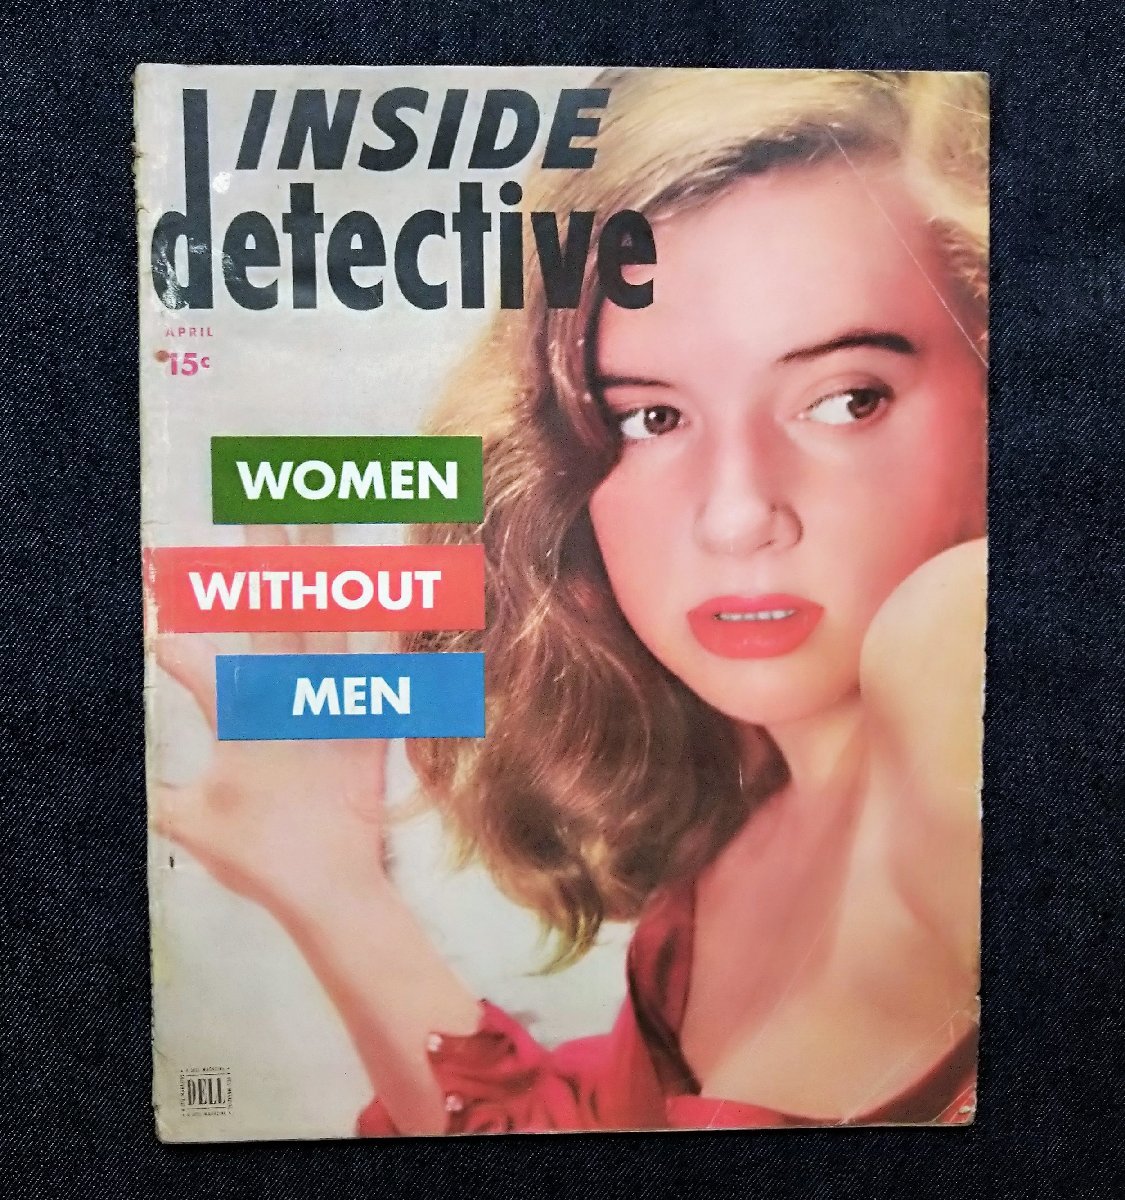 1952年 パルプ・マガジン Inside Detective トゥルークライム 犯罪 洋書 Woman without men シリアルキラー/警察/連続殺人 の画像1